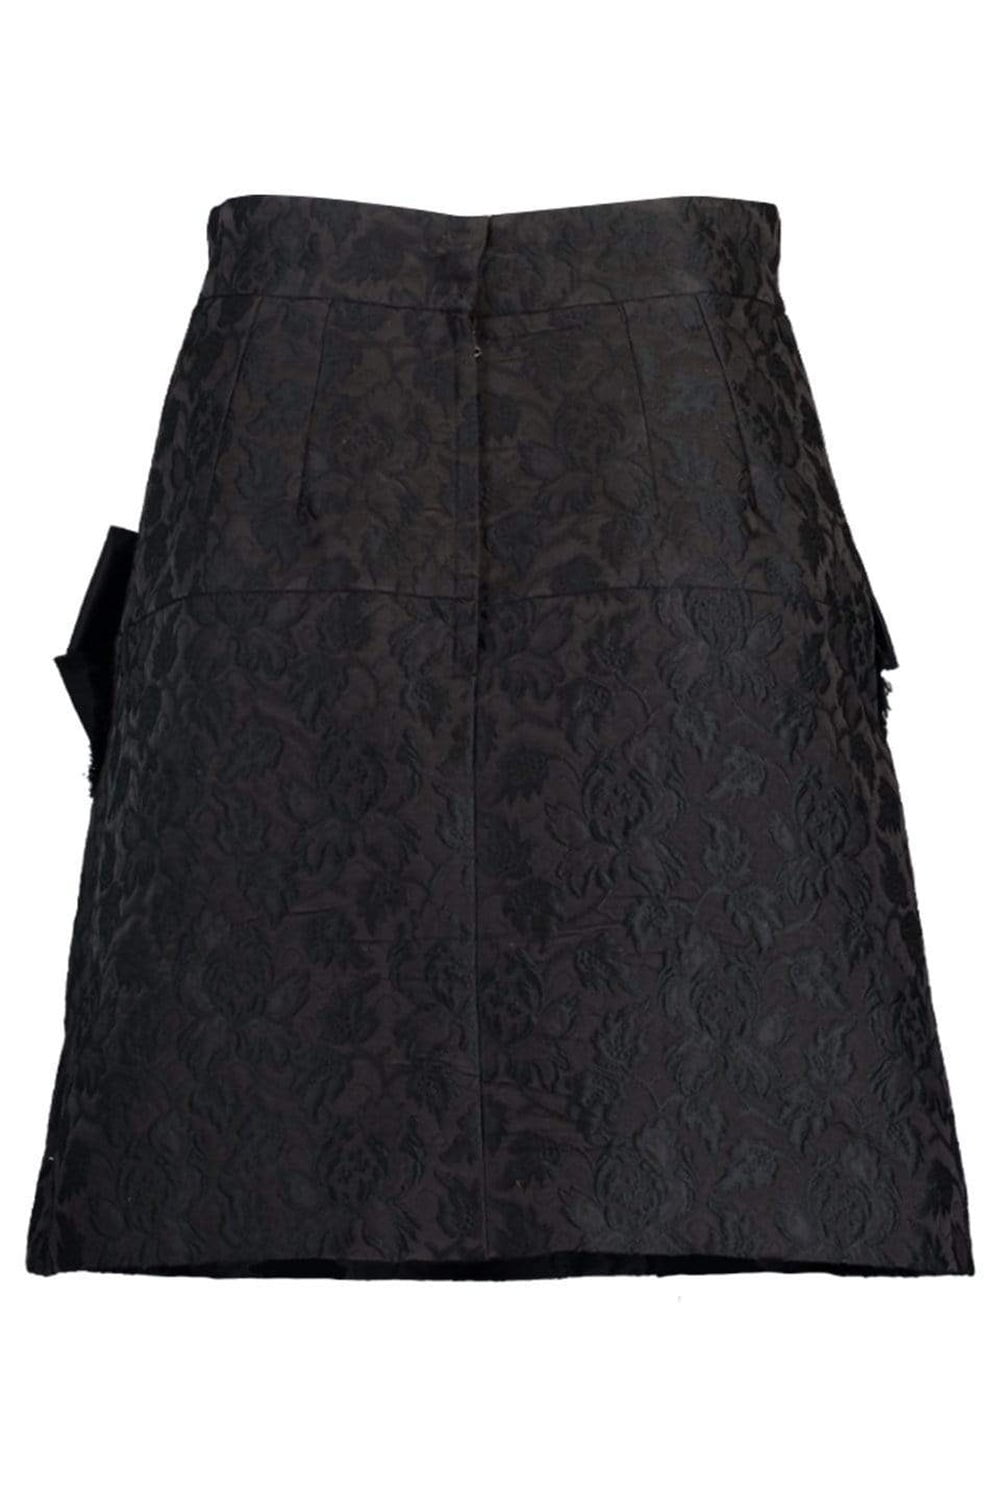 DOLCE & GABBANA-Embellished Skirt-BLACK